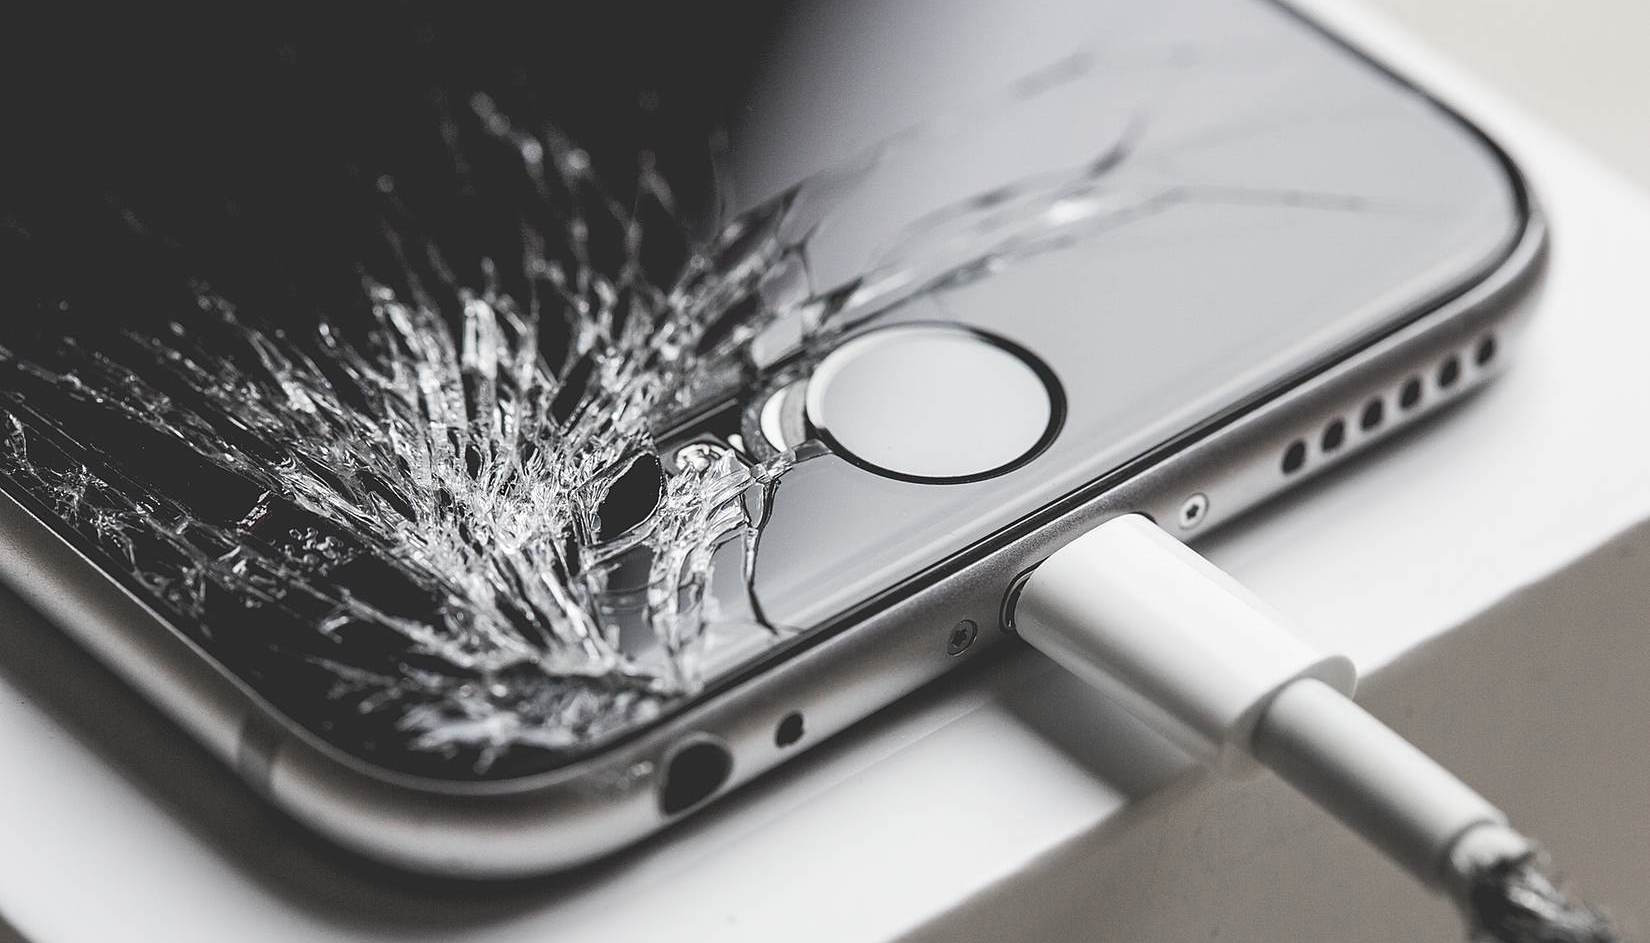  iPhone repair in Ukraine